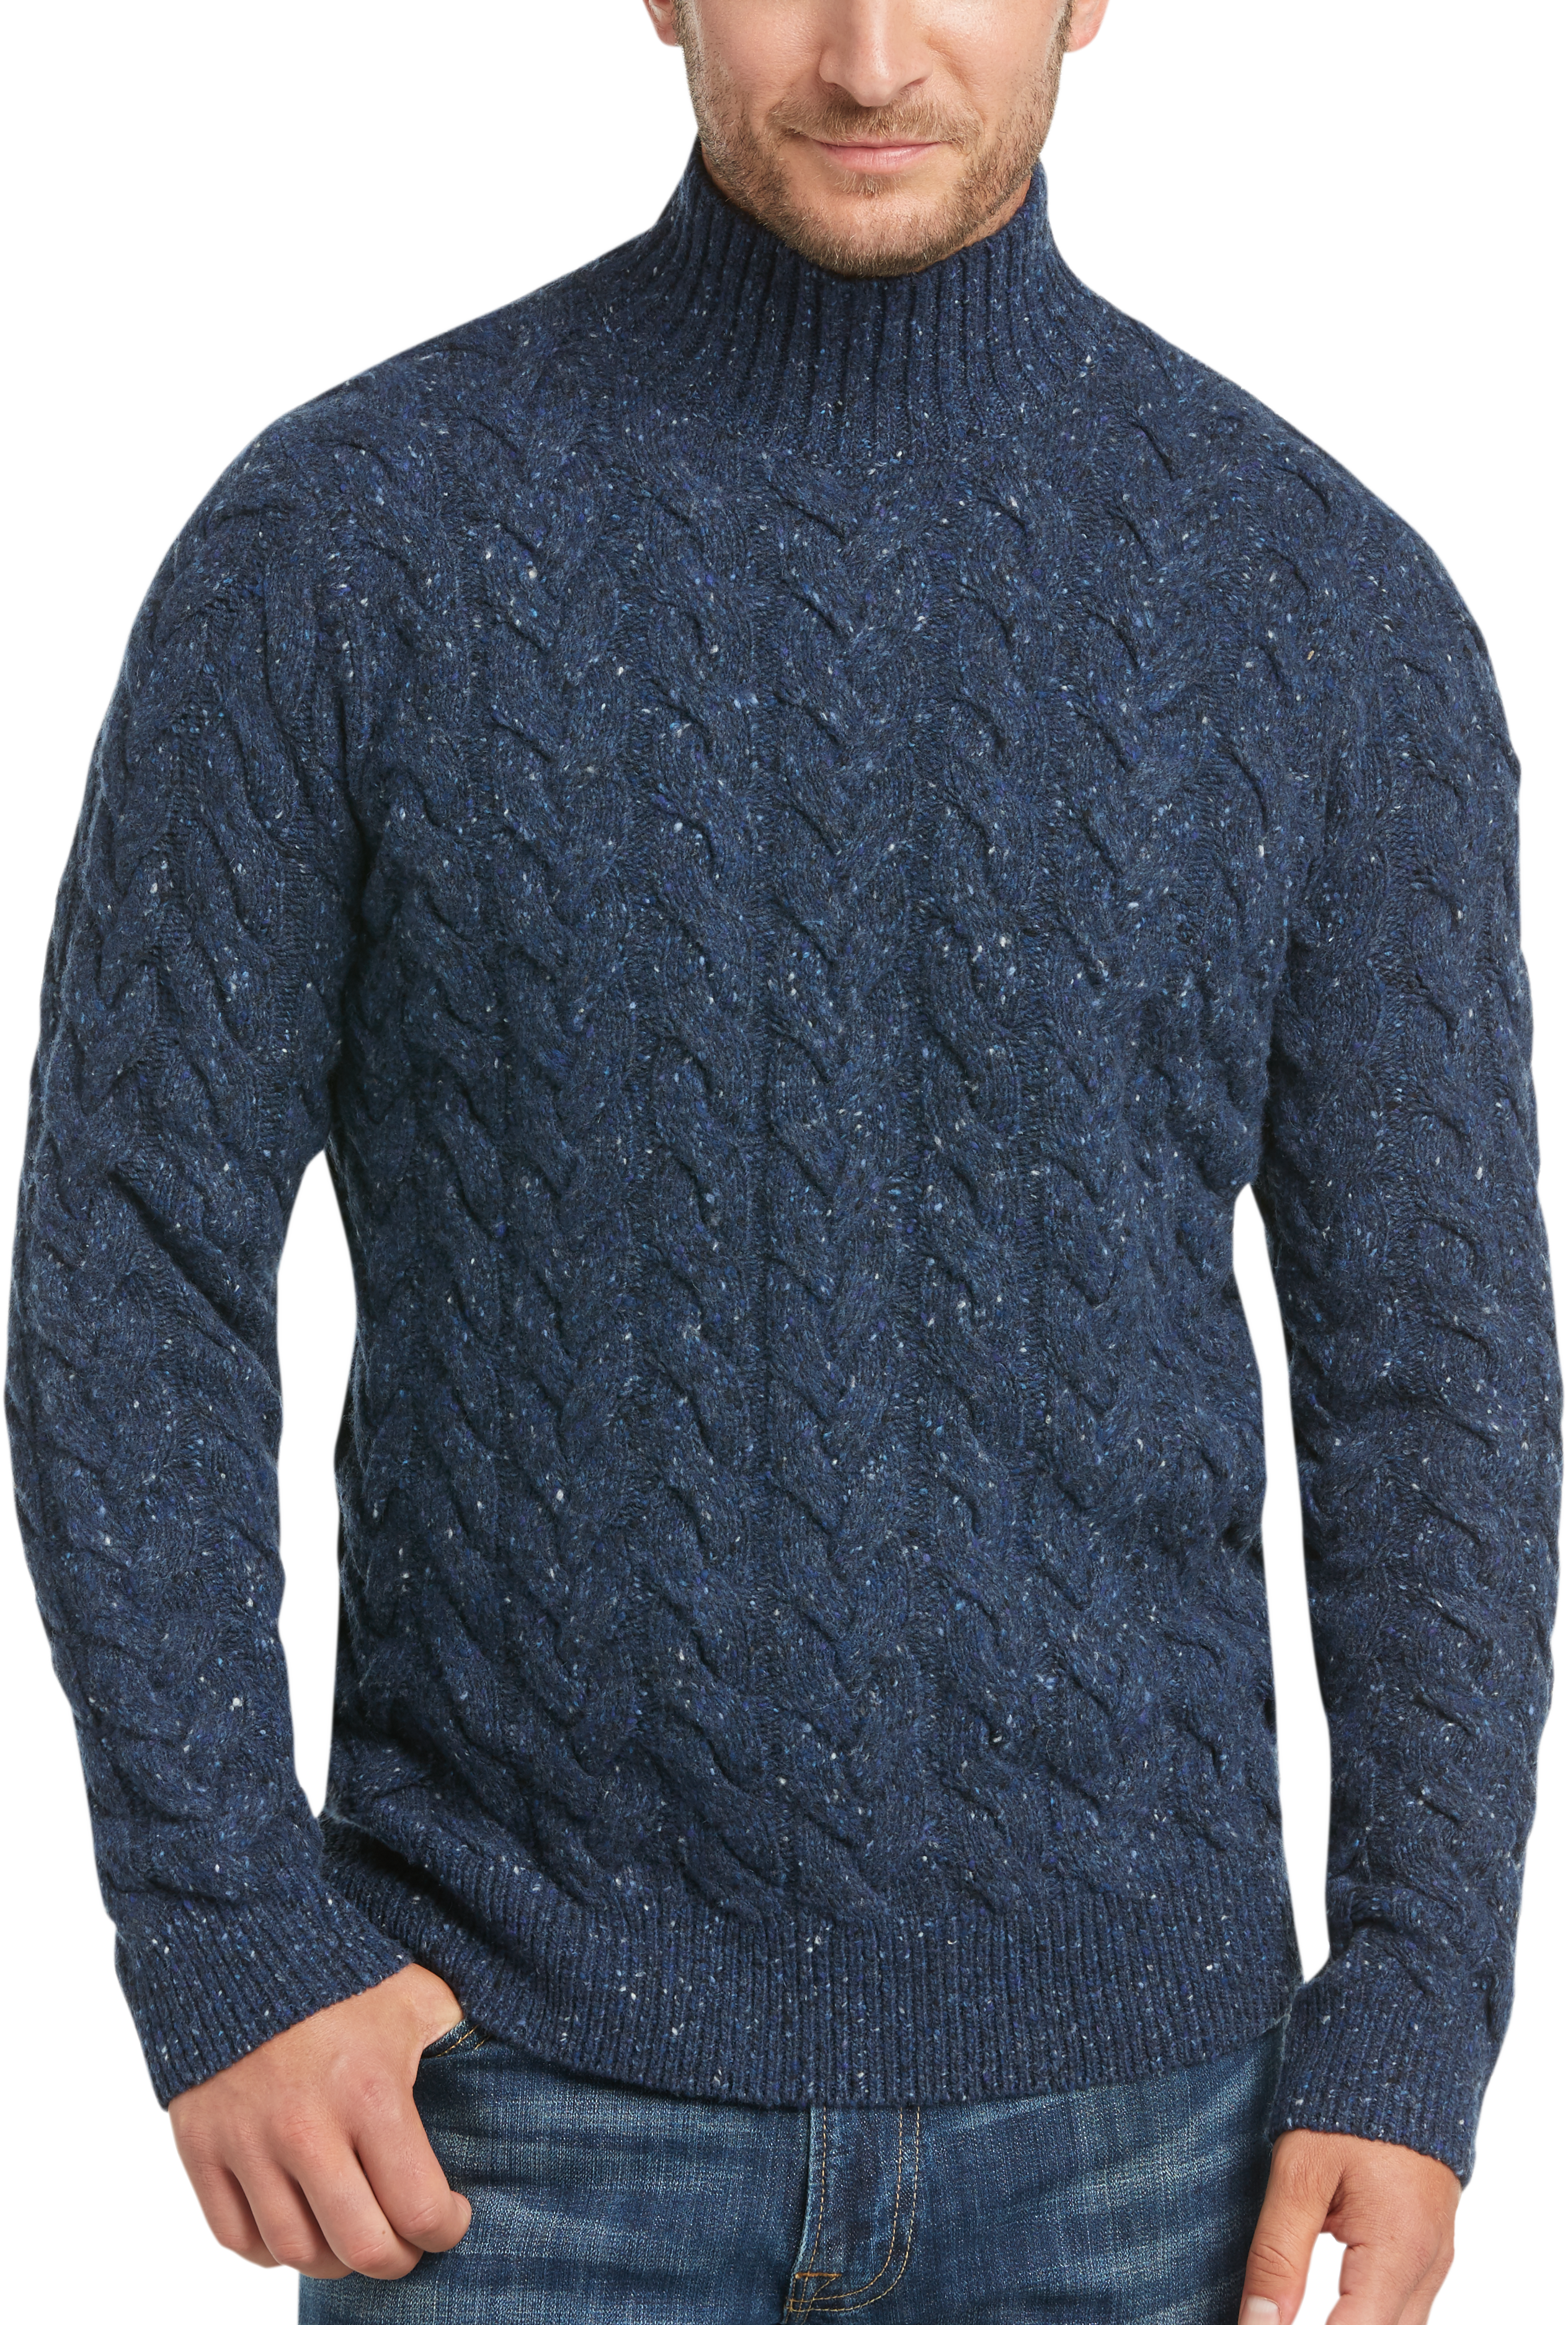 Joseph Abboud Denim Blue Mock-Neck Cable-Knit Sweater - Men's Sale ...